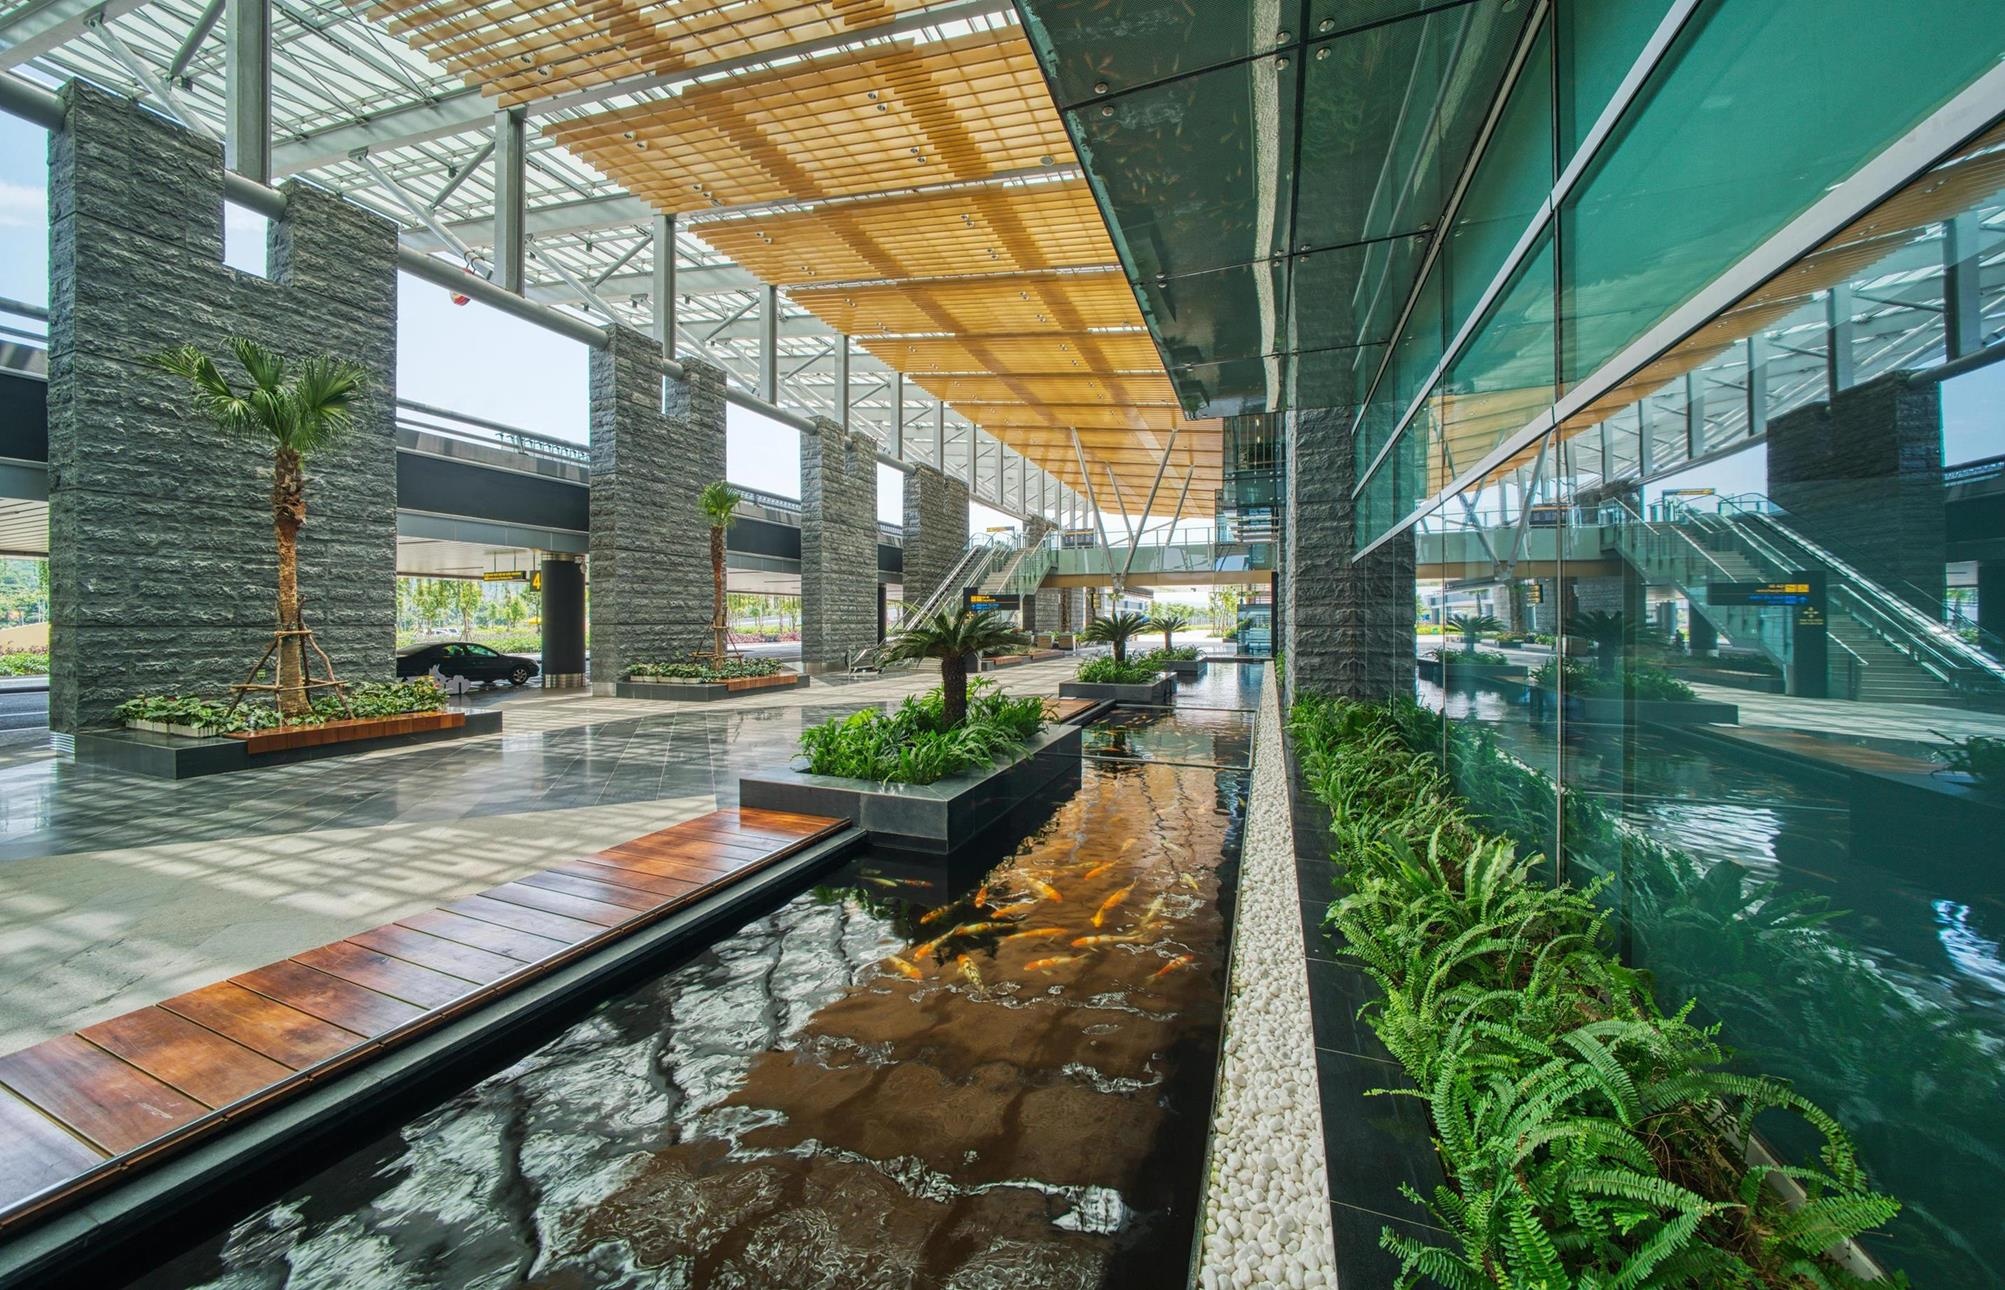 Cảng HKQT Vân Đồn là Sân bay khu vực hàng đầu châu Á 2020